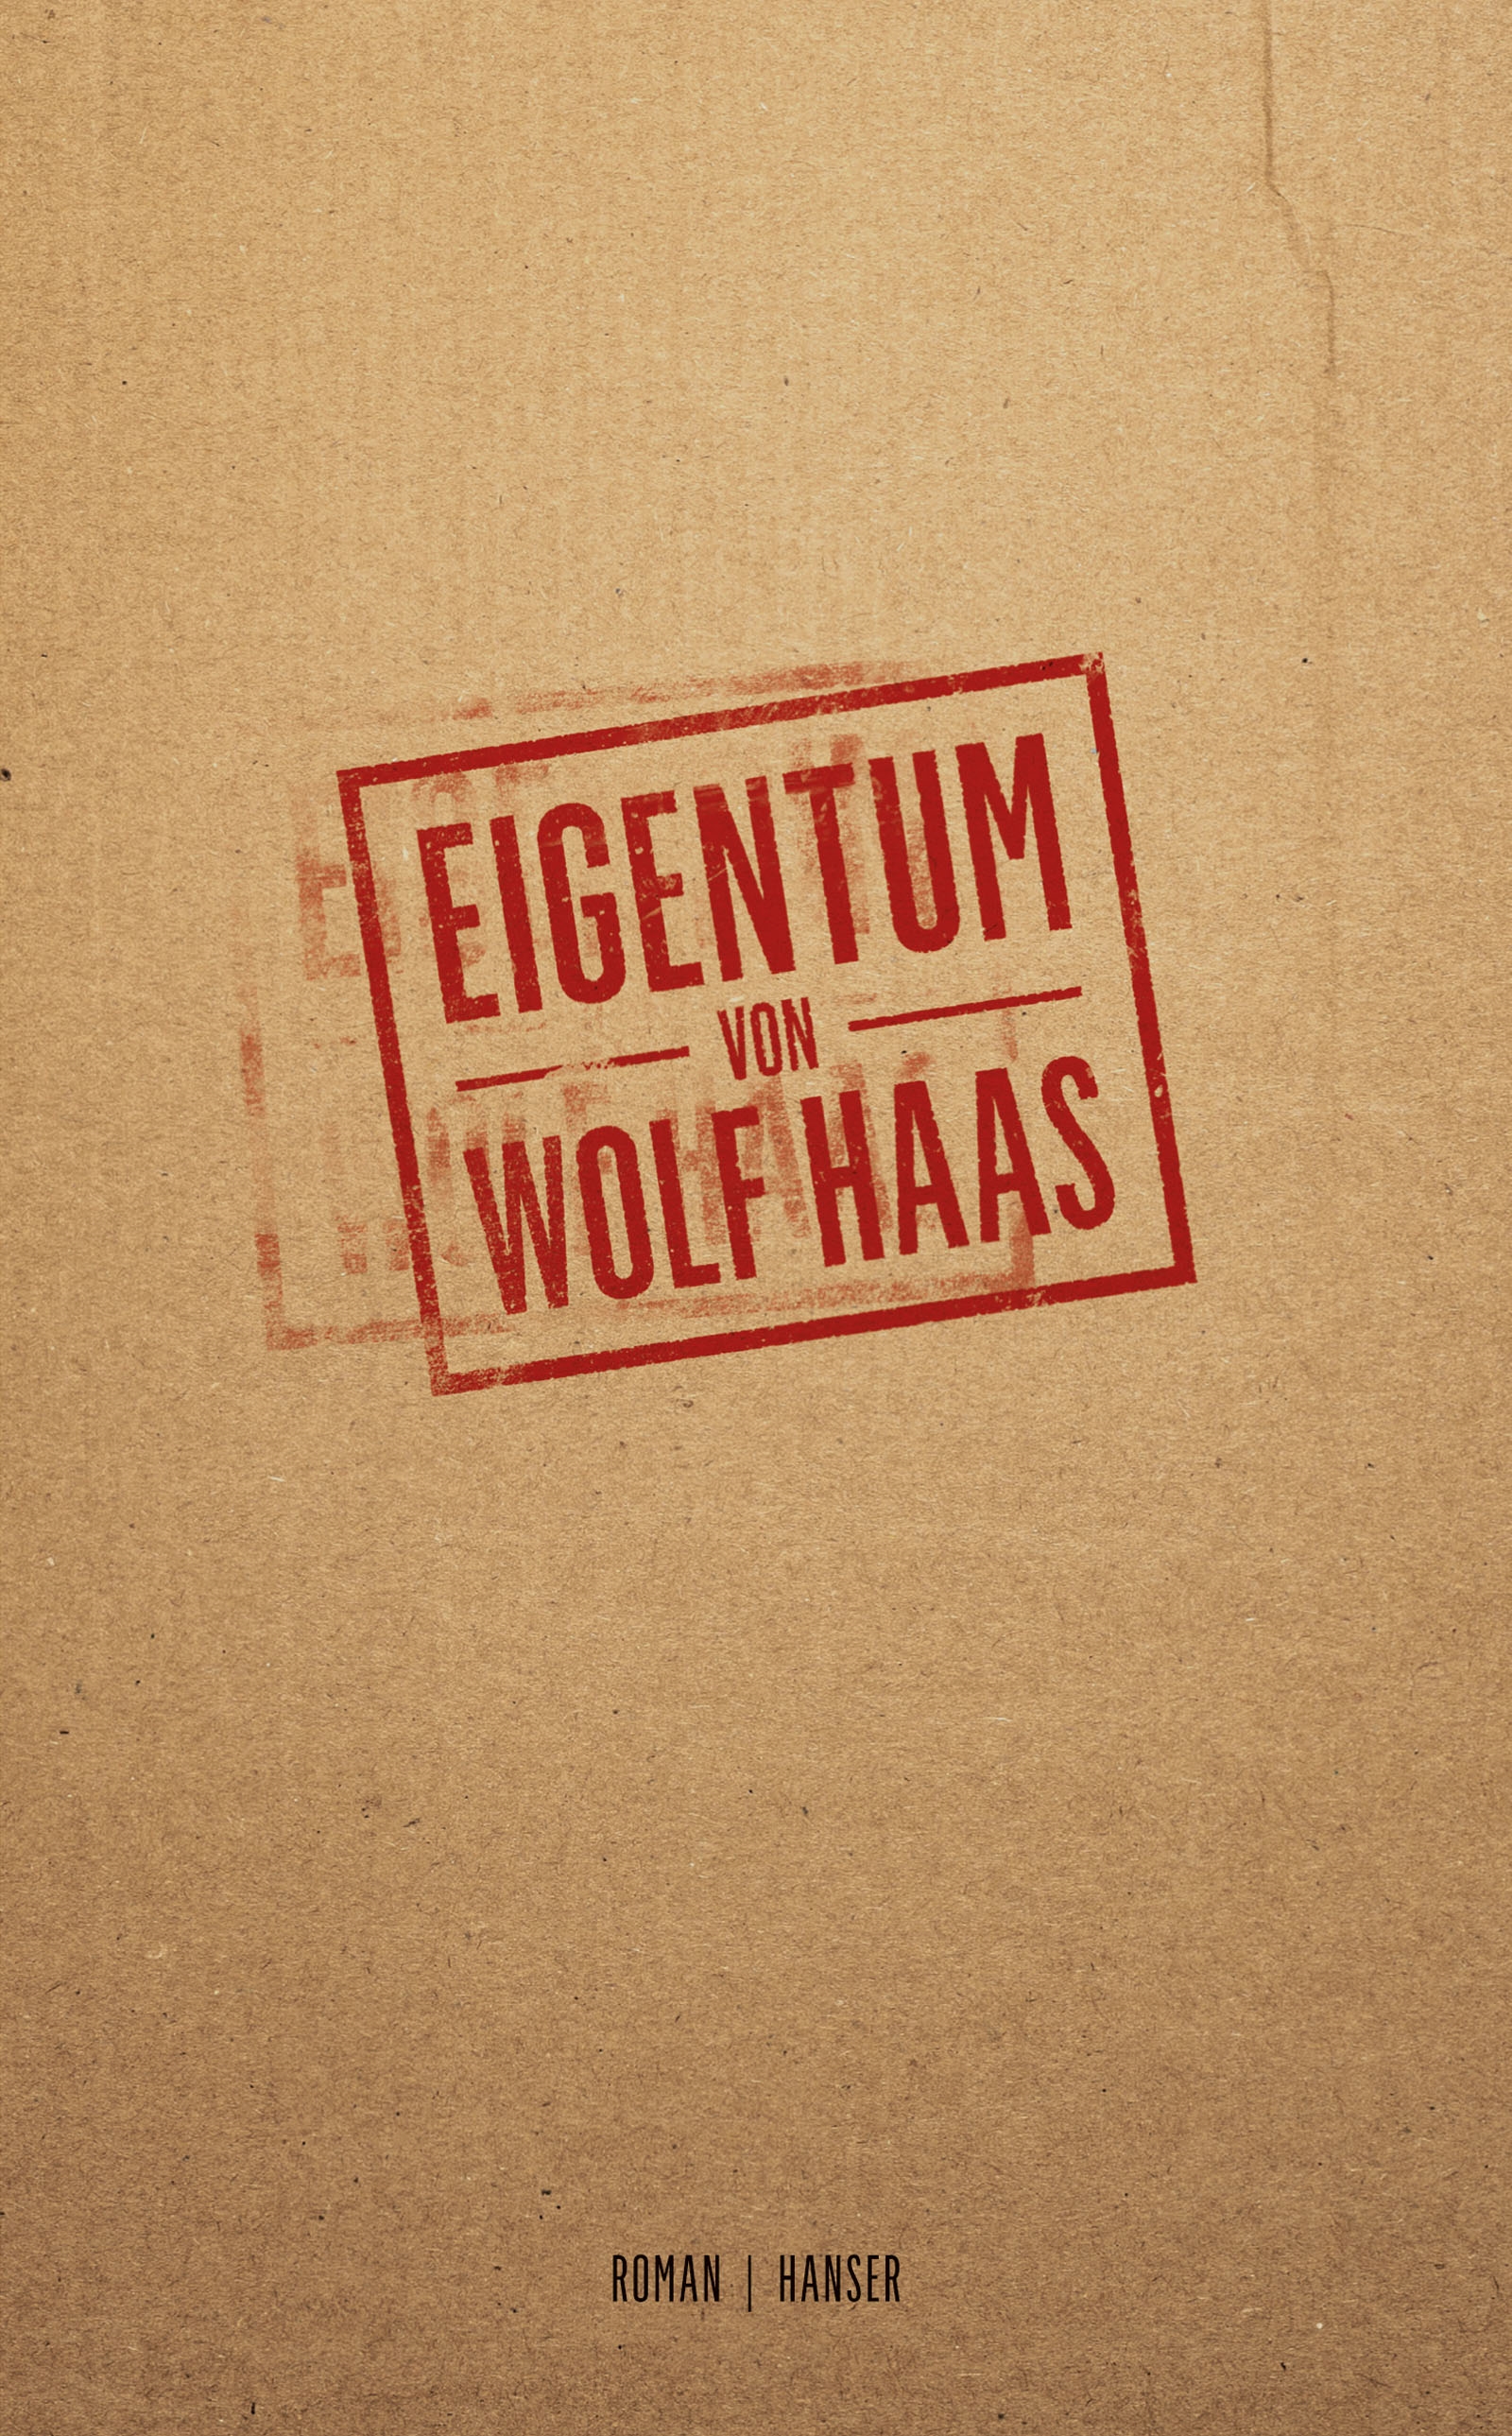 Wolf Haas: Eigentum (c) Hanser Verlag